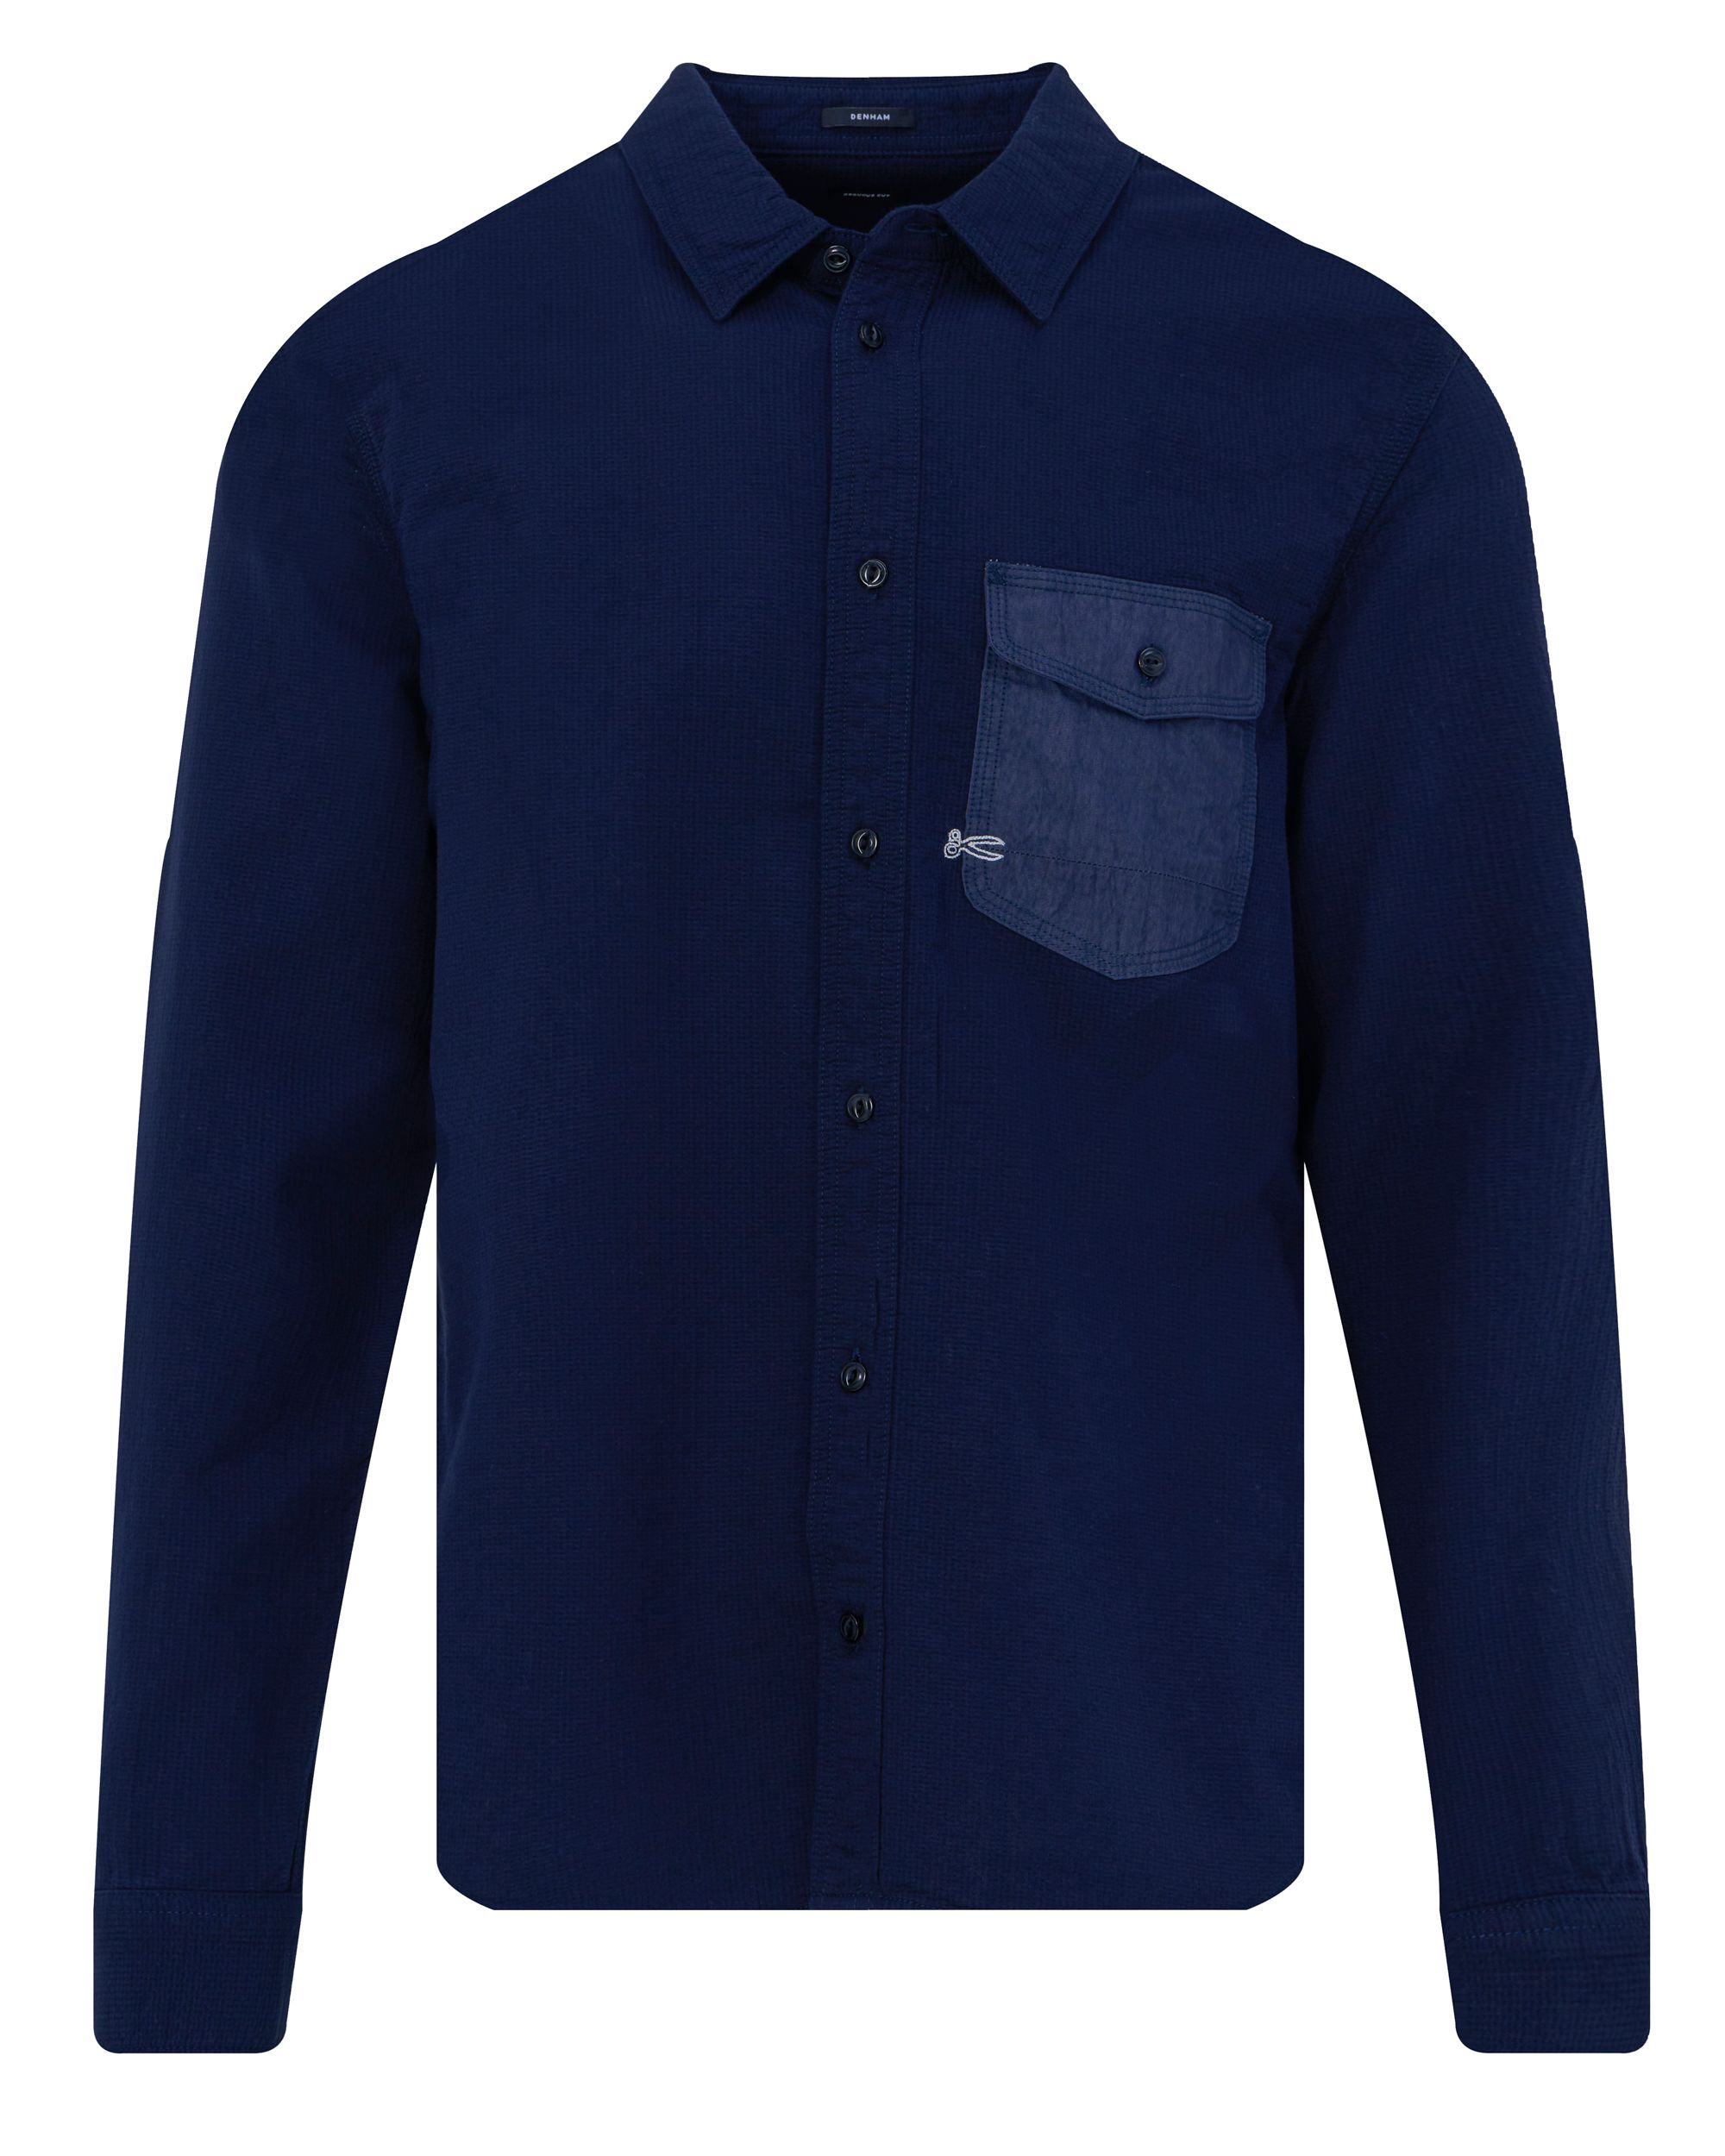 DENHAM Worker Casual Overhemd LM Donker blauw 091004-001-L